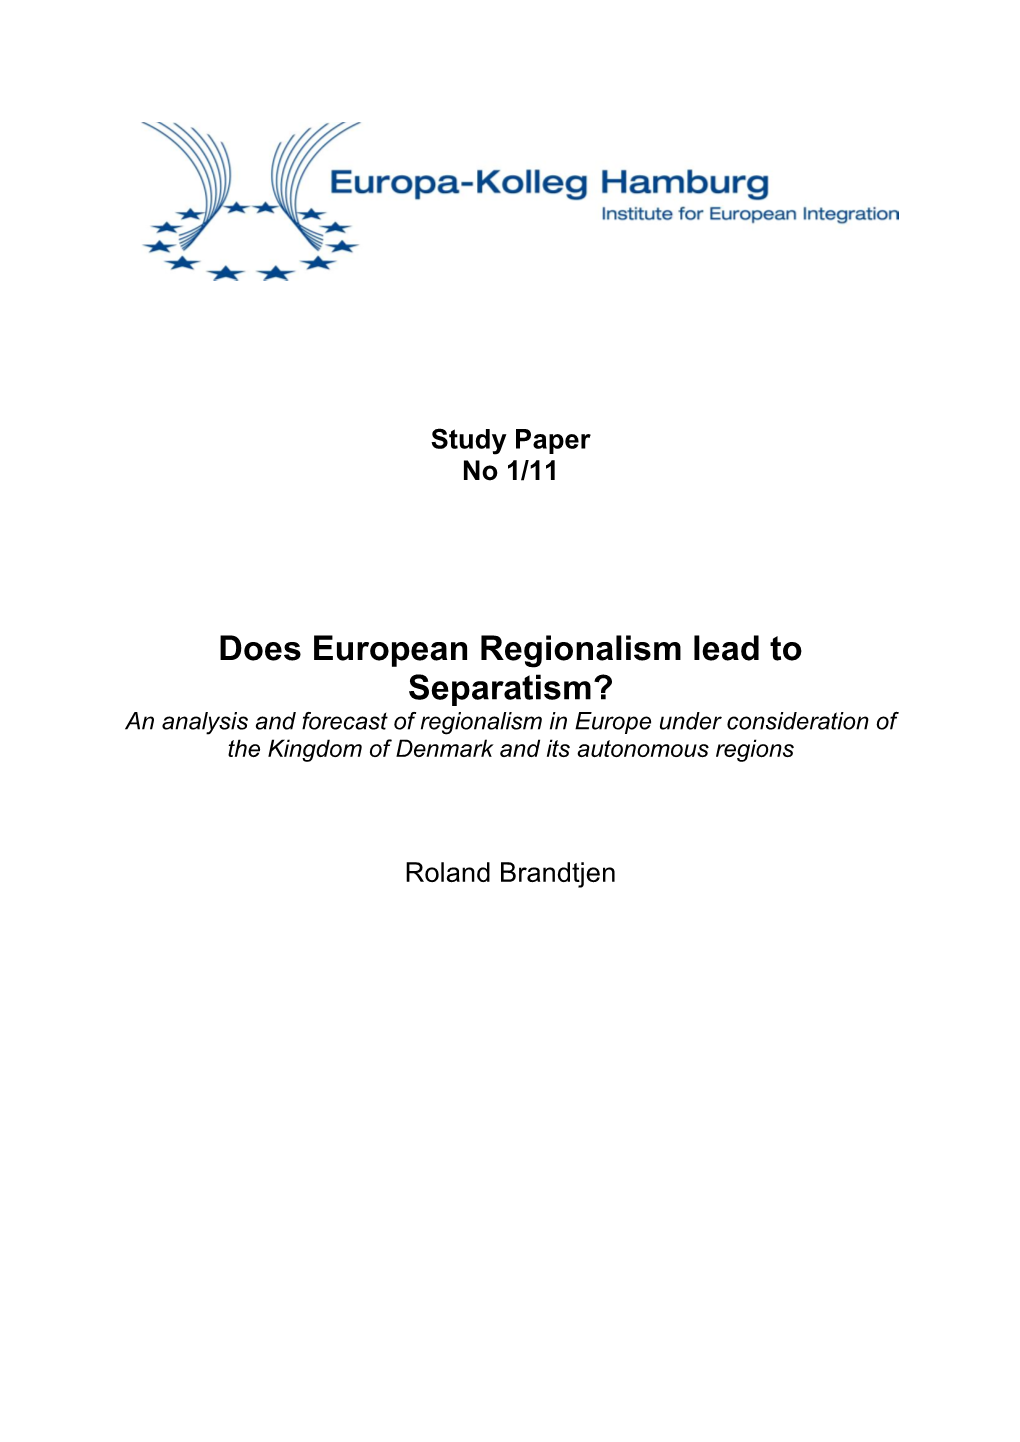 Does European Regionalism Lead to Separatism?